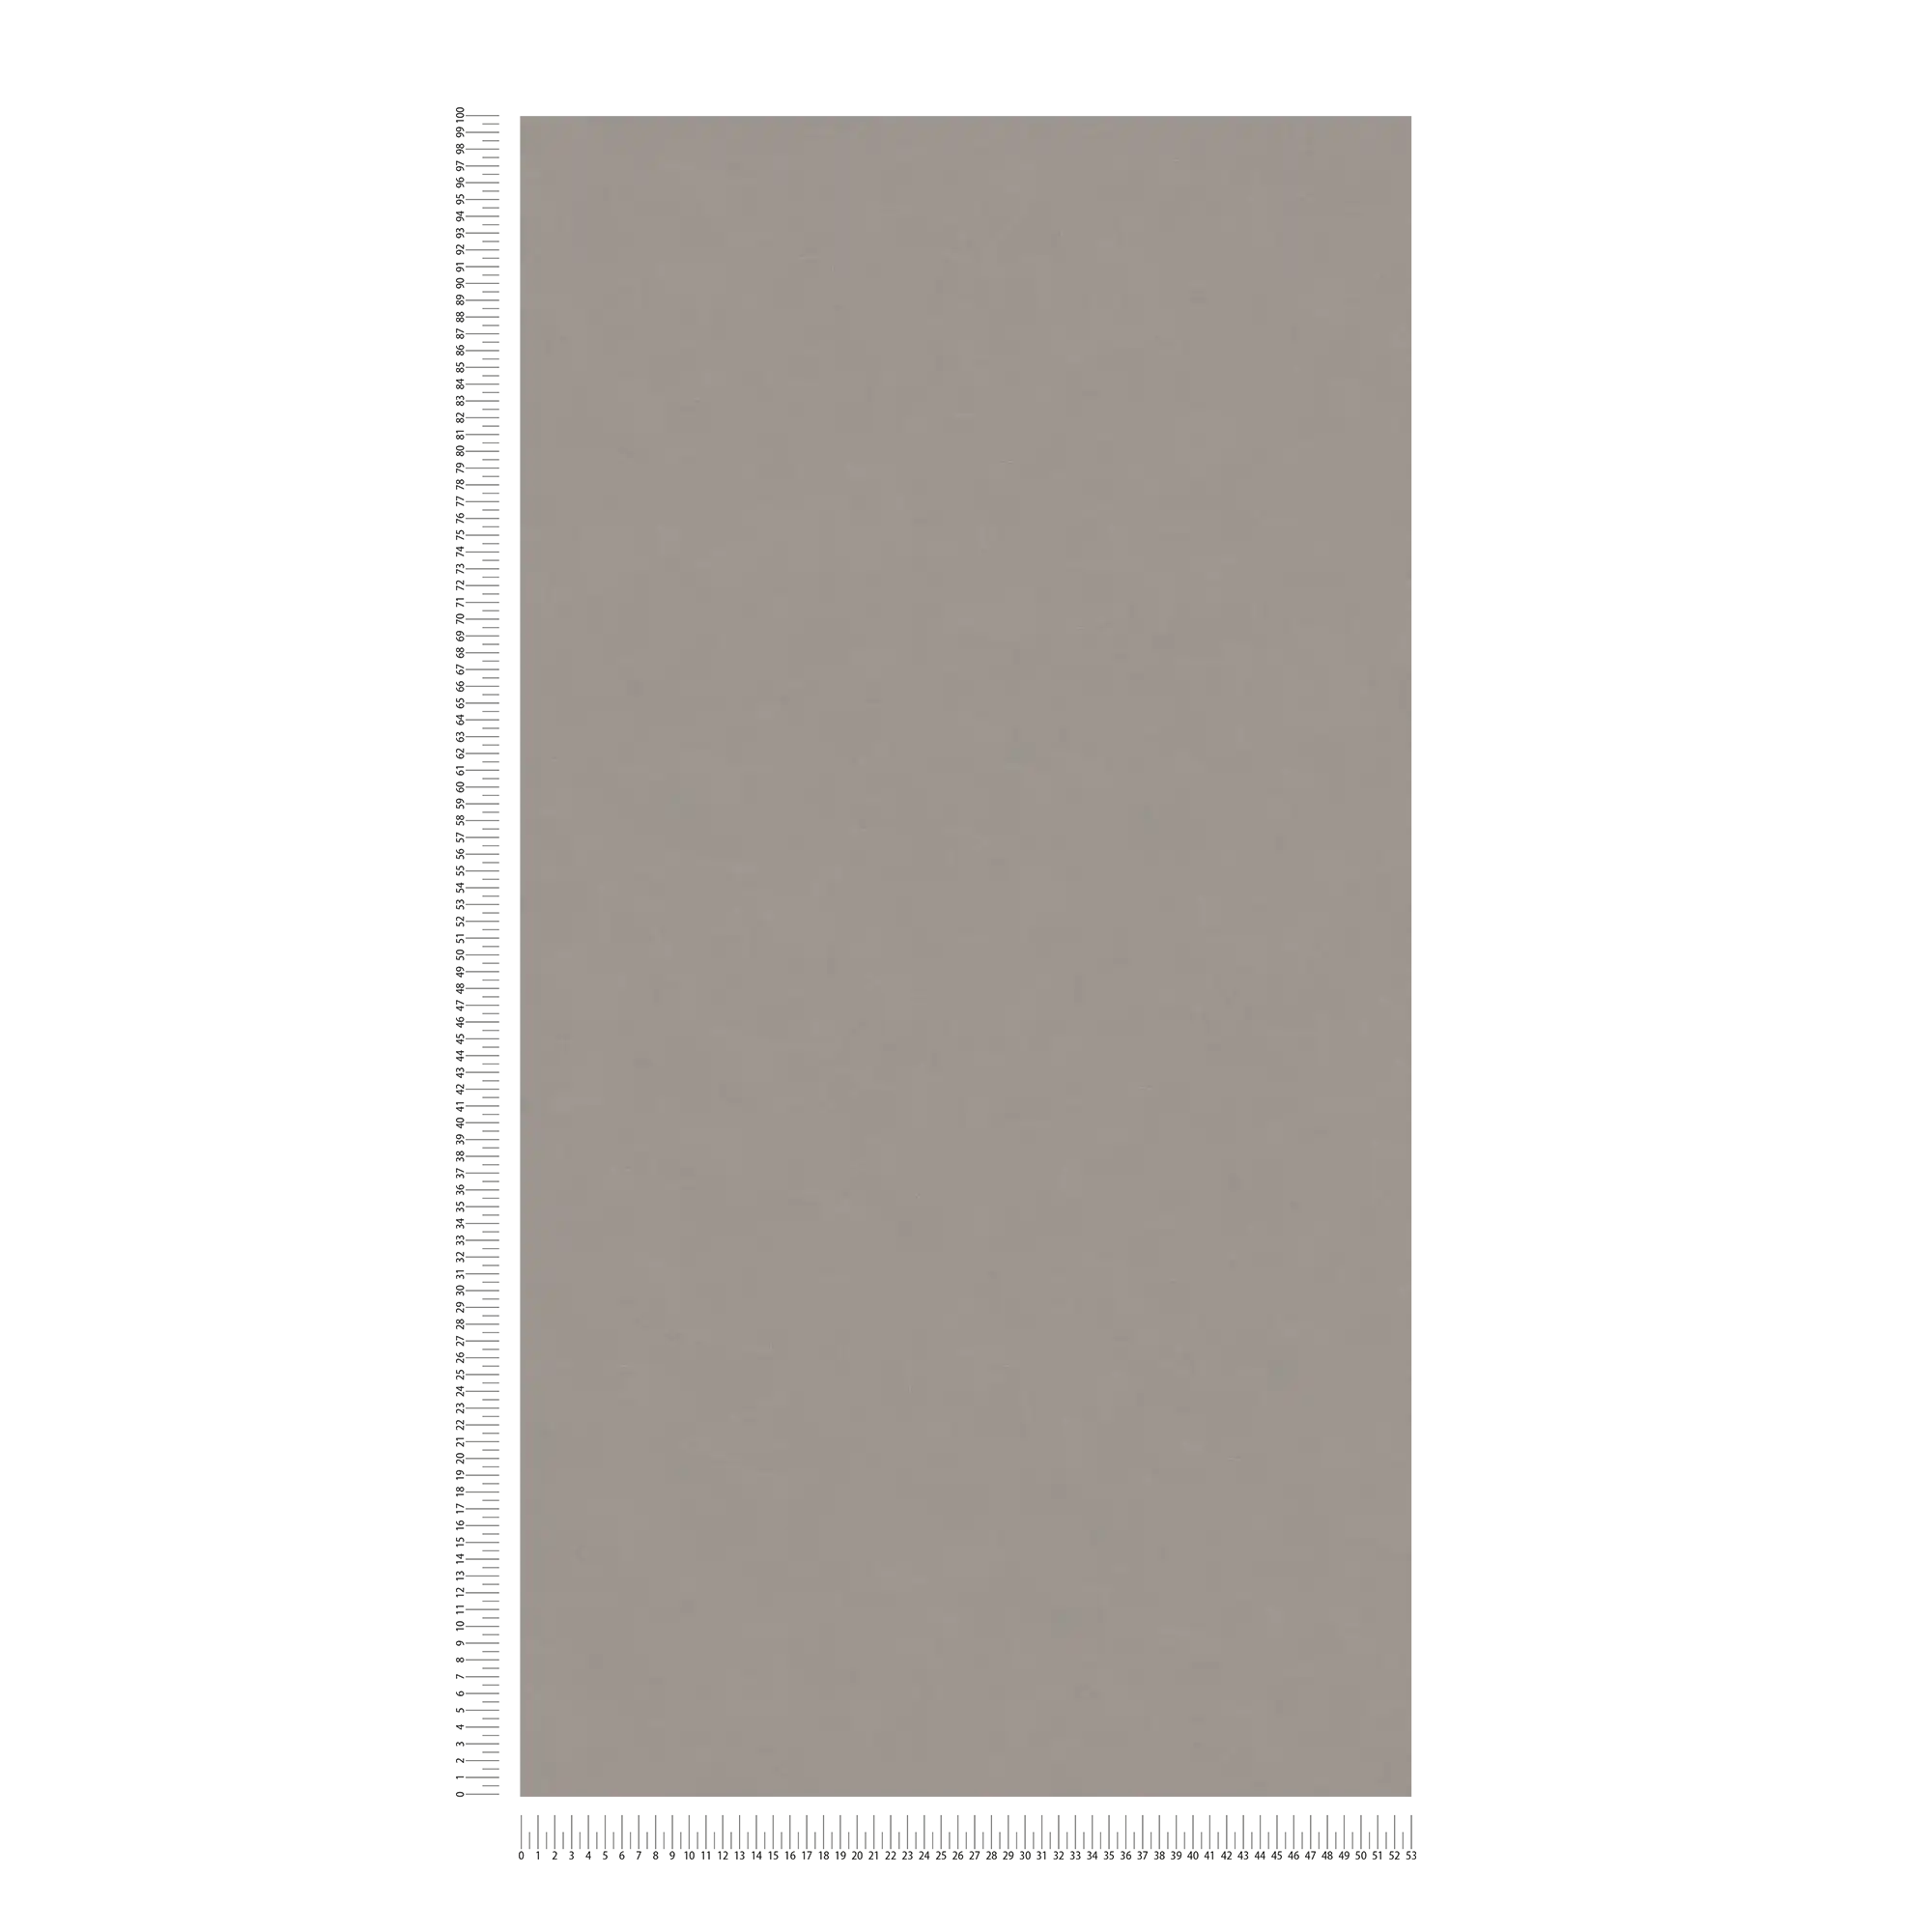             Papel pintado óptico de yeso liso con textura - gris, topo
        